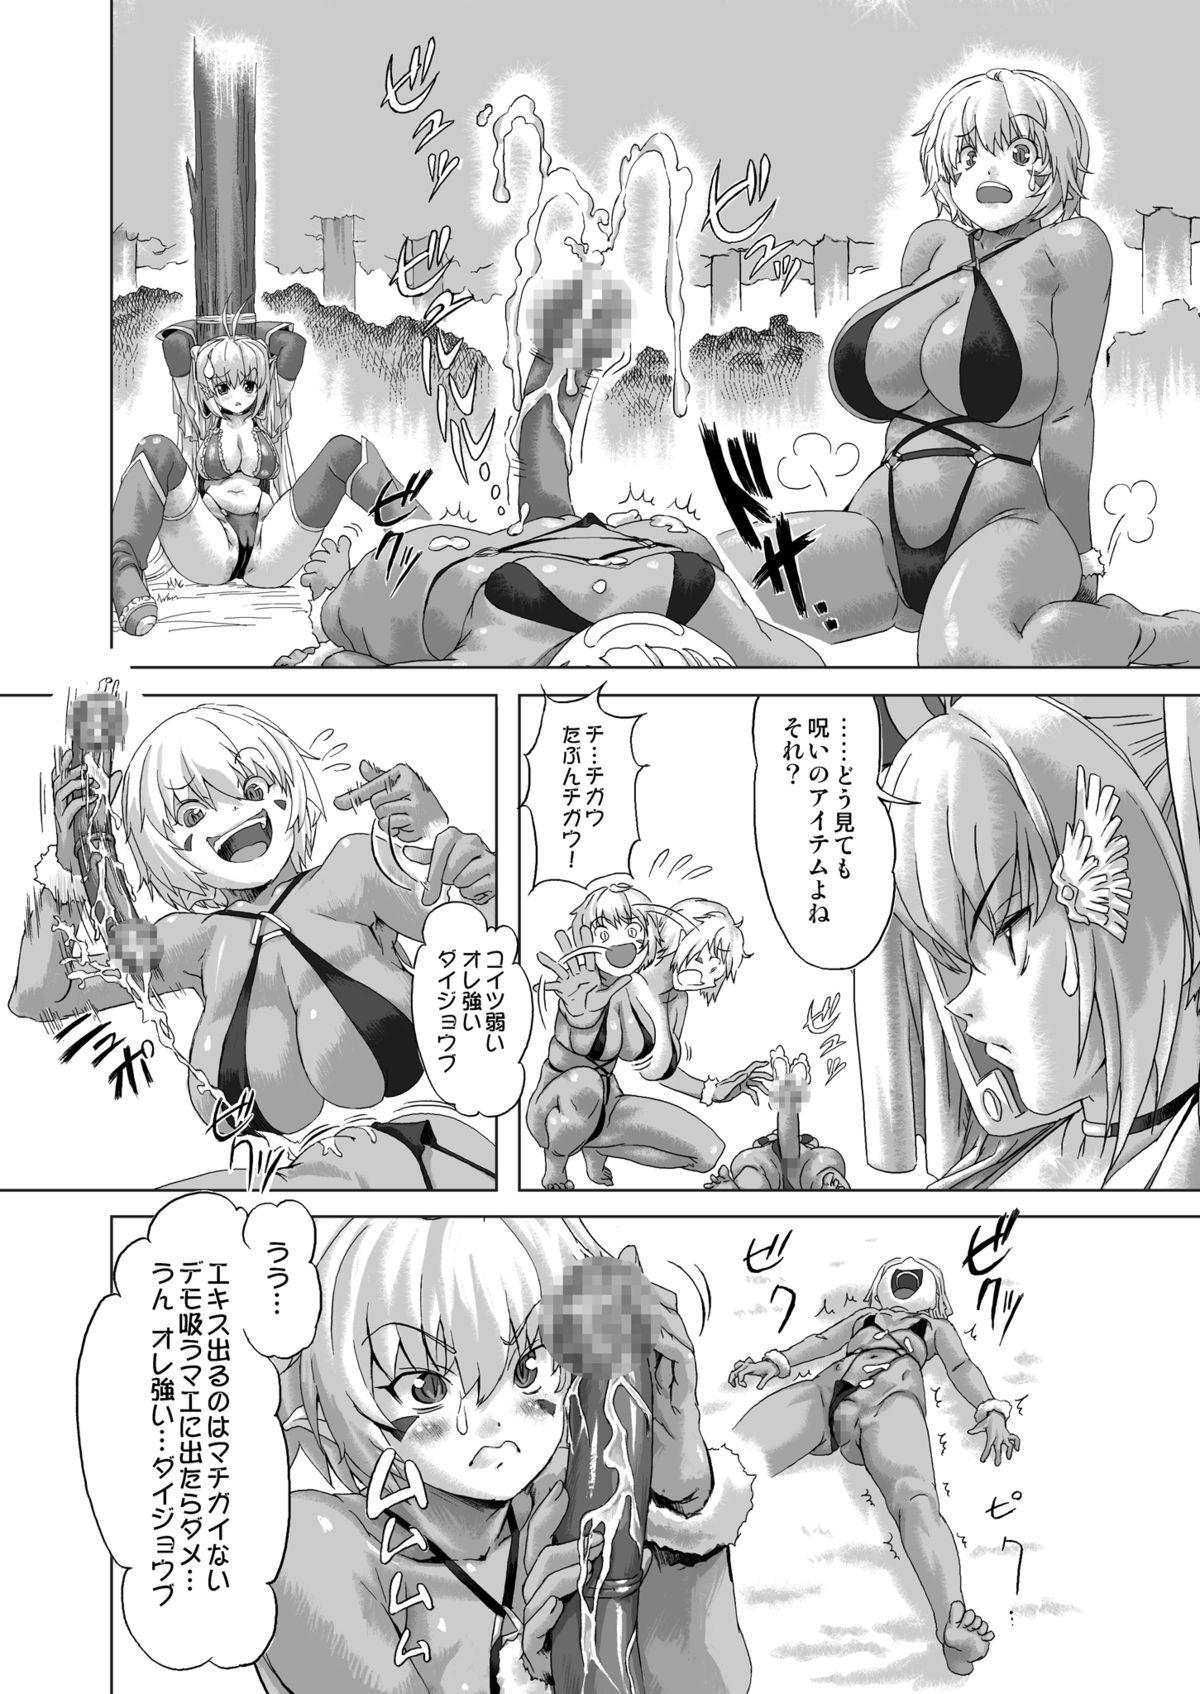 Young Petite Porn Zoku Senshi vs. - Dragon quest iii Dirty - Page 9